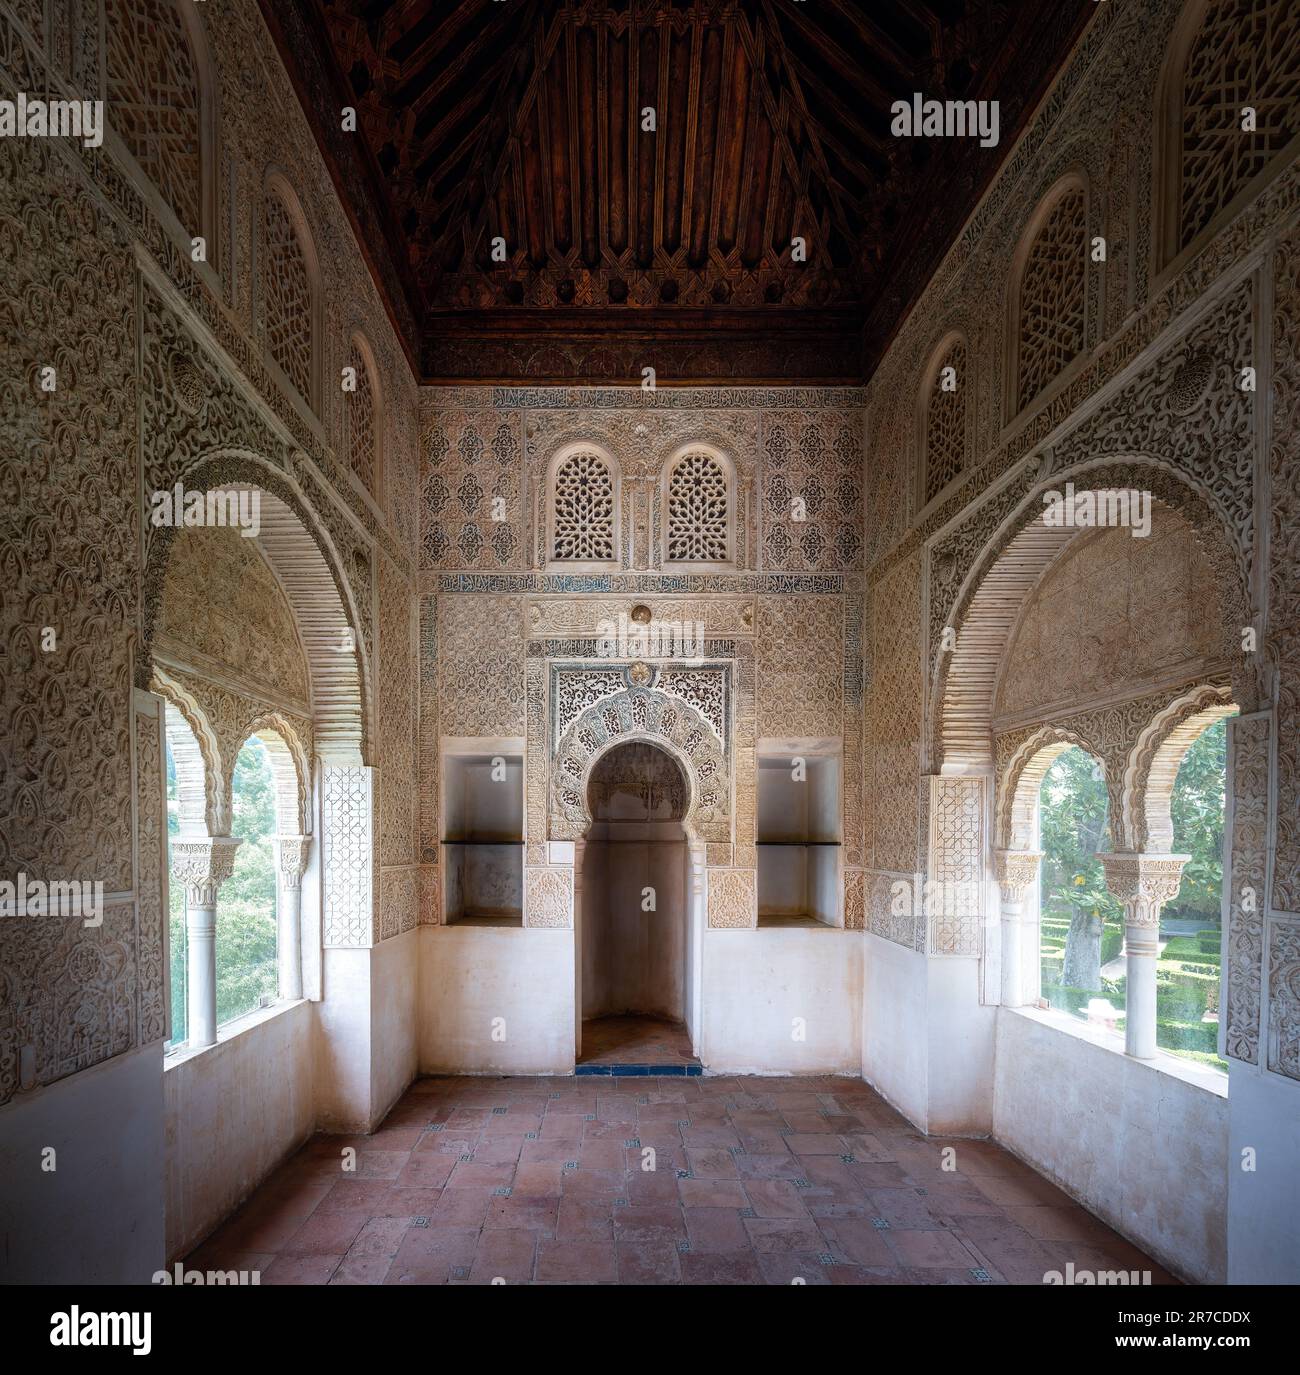 Intérieur de l'Oratoire (salle de prière) avec Mihrab niche dans la région El Partal de l'Alhambra - Grenade, Andalousie, Espagne Banque D'Images